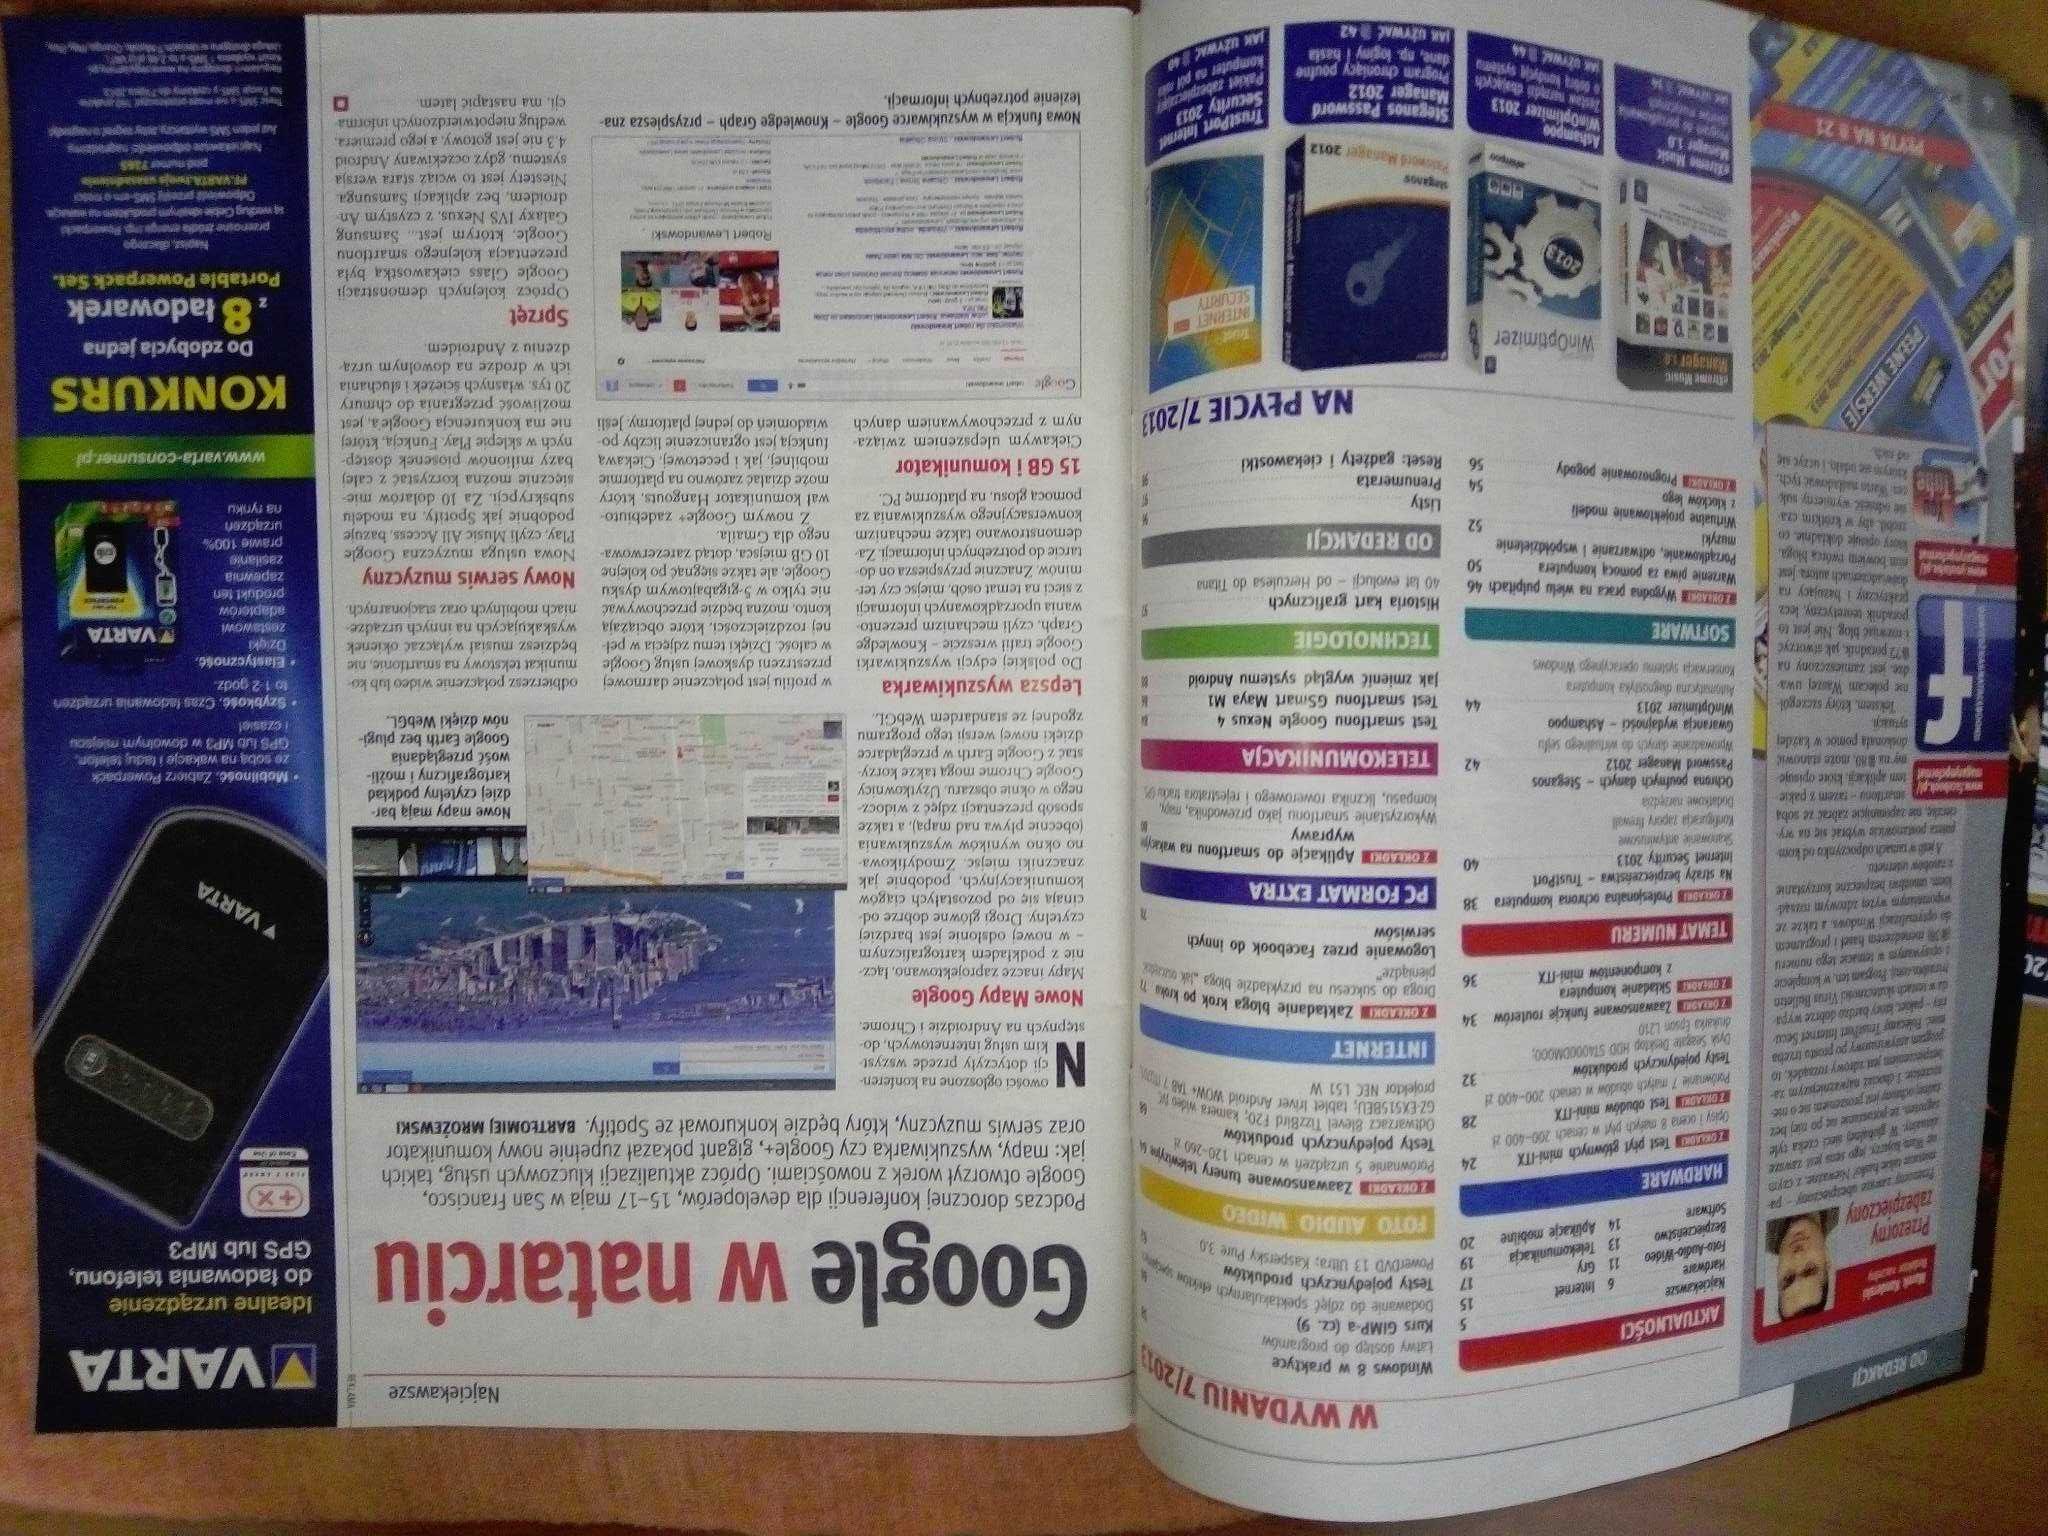 PC Format 7 2013 lipiec (155) Gazeta + płyta CD Czasopismo